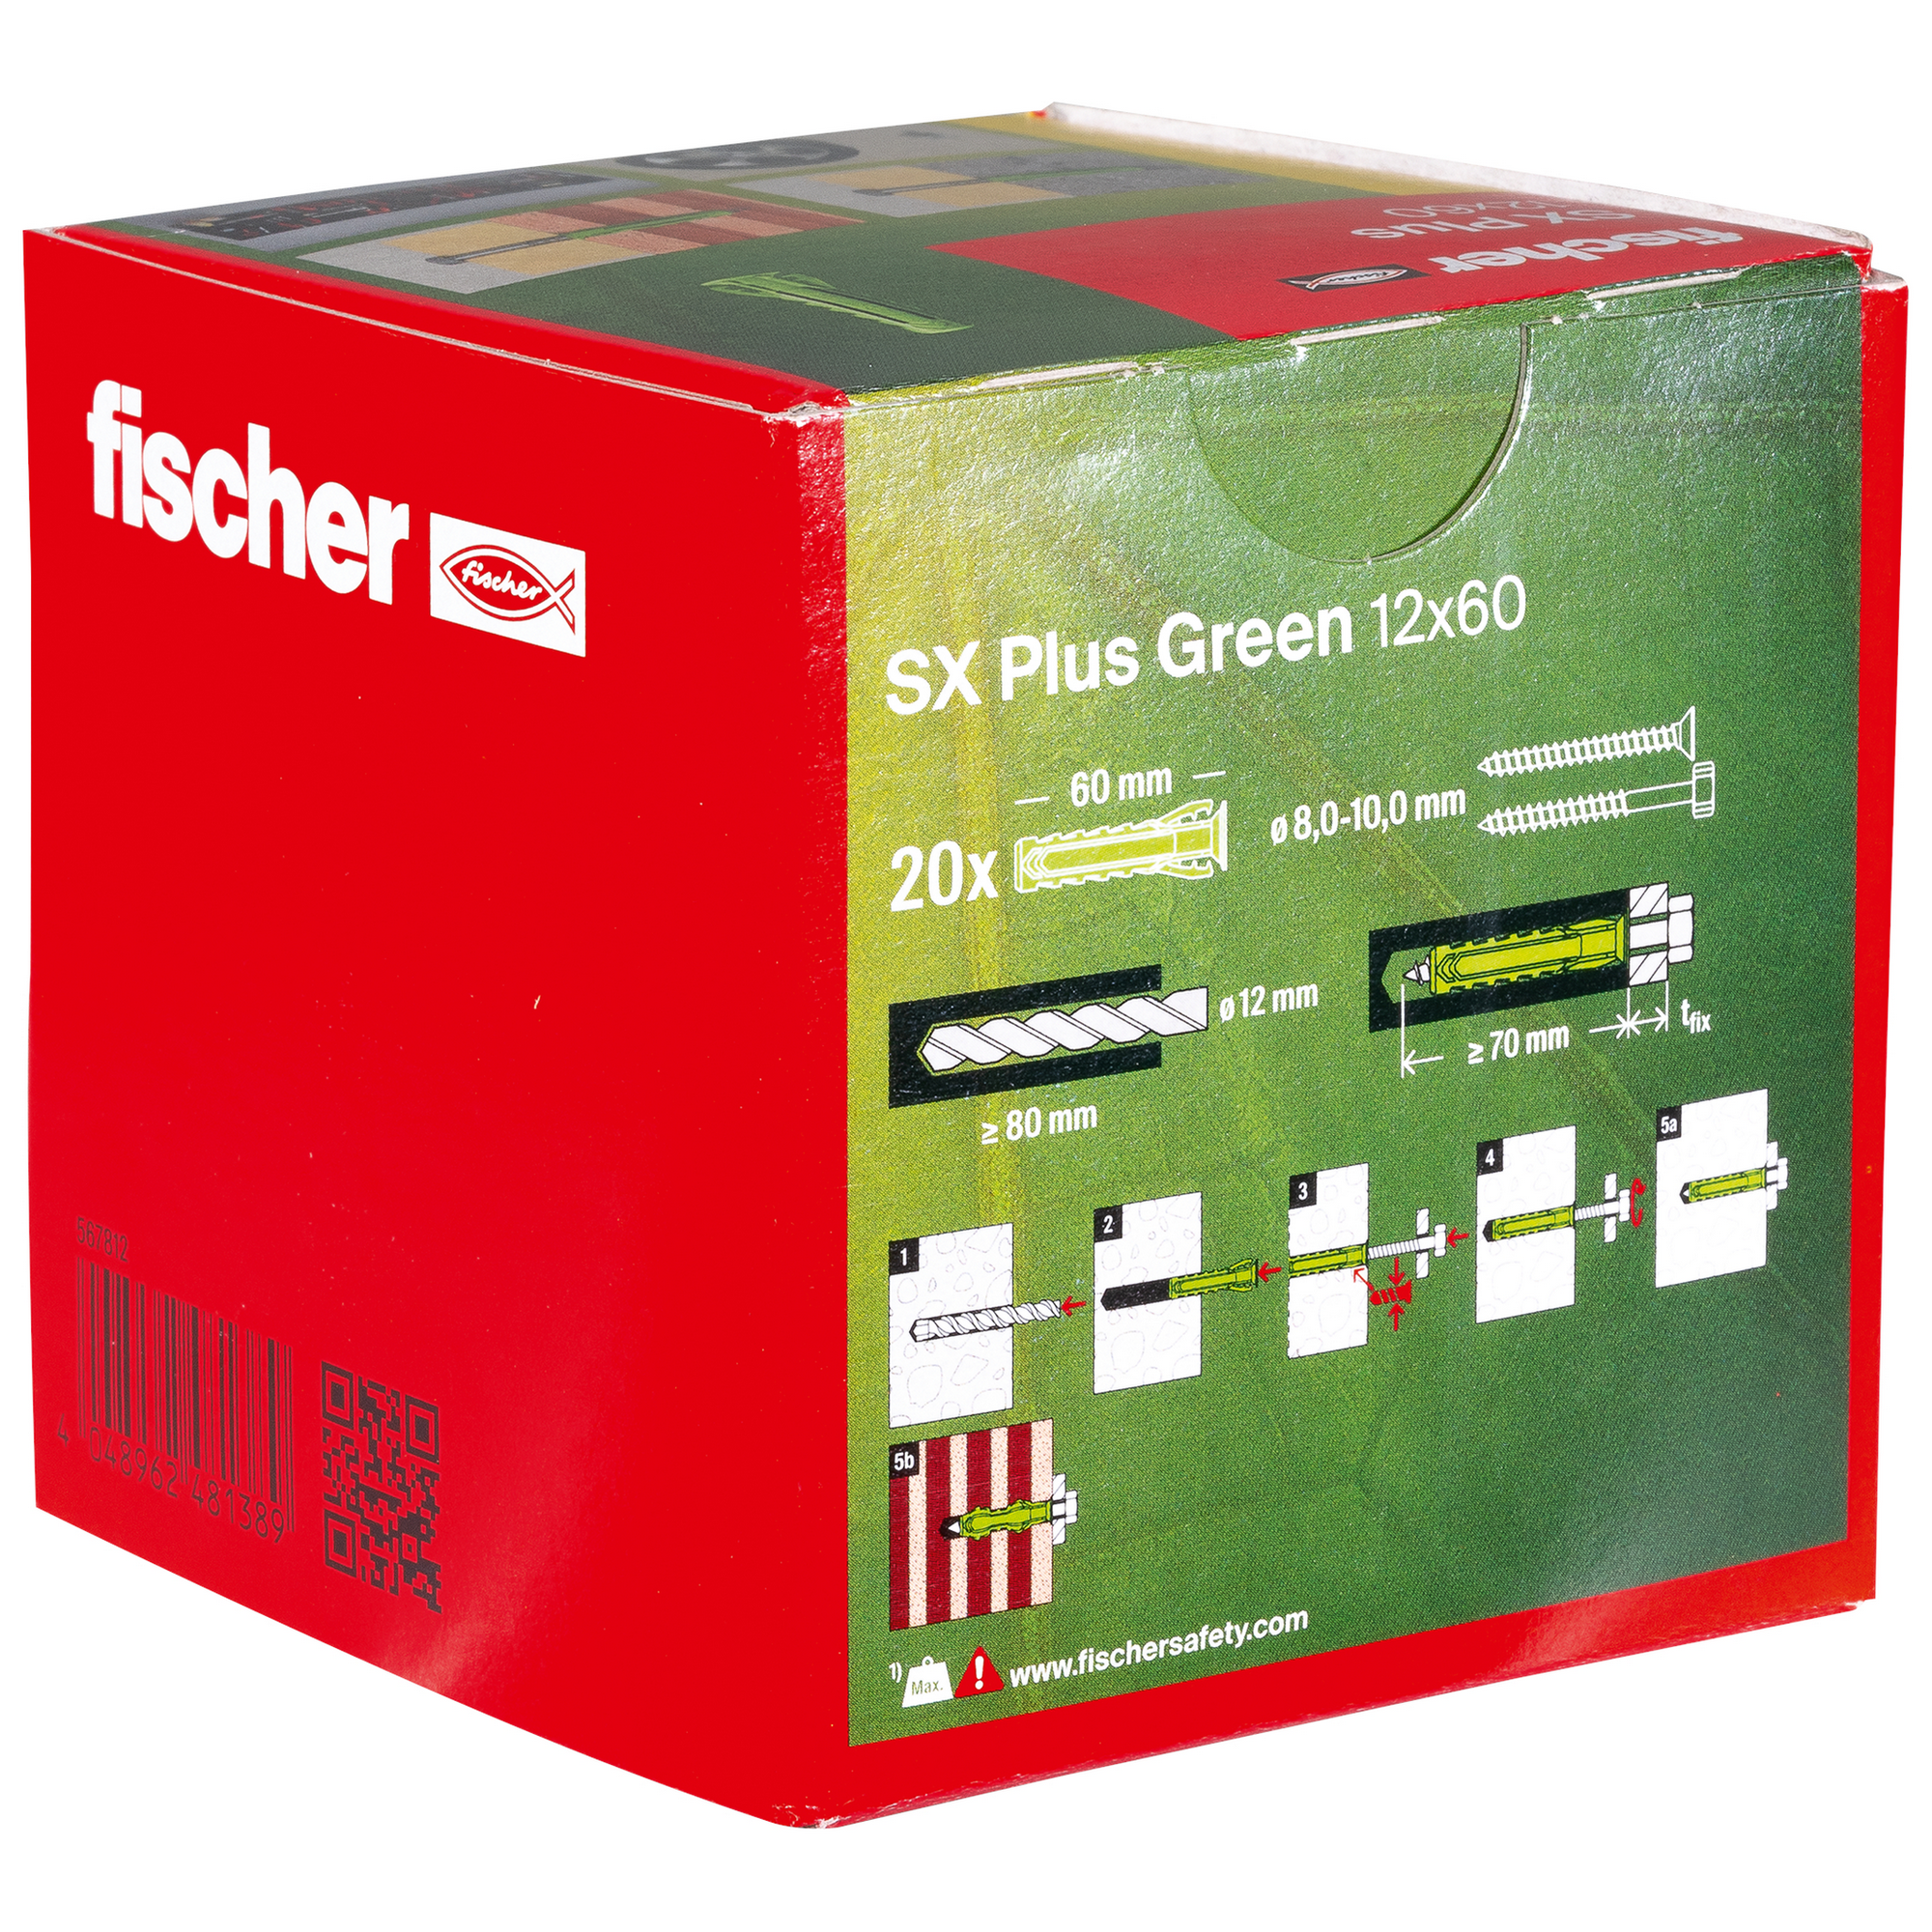 Spreizdübel-Set 'SX Plus Green' Ø 12 x 60 mm, 45-teilig + product picture